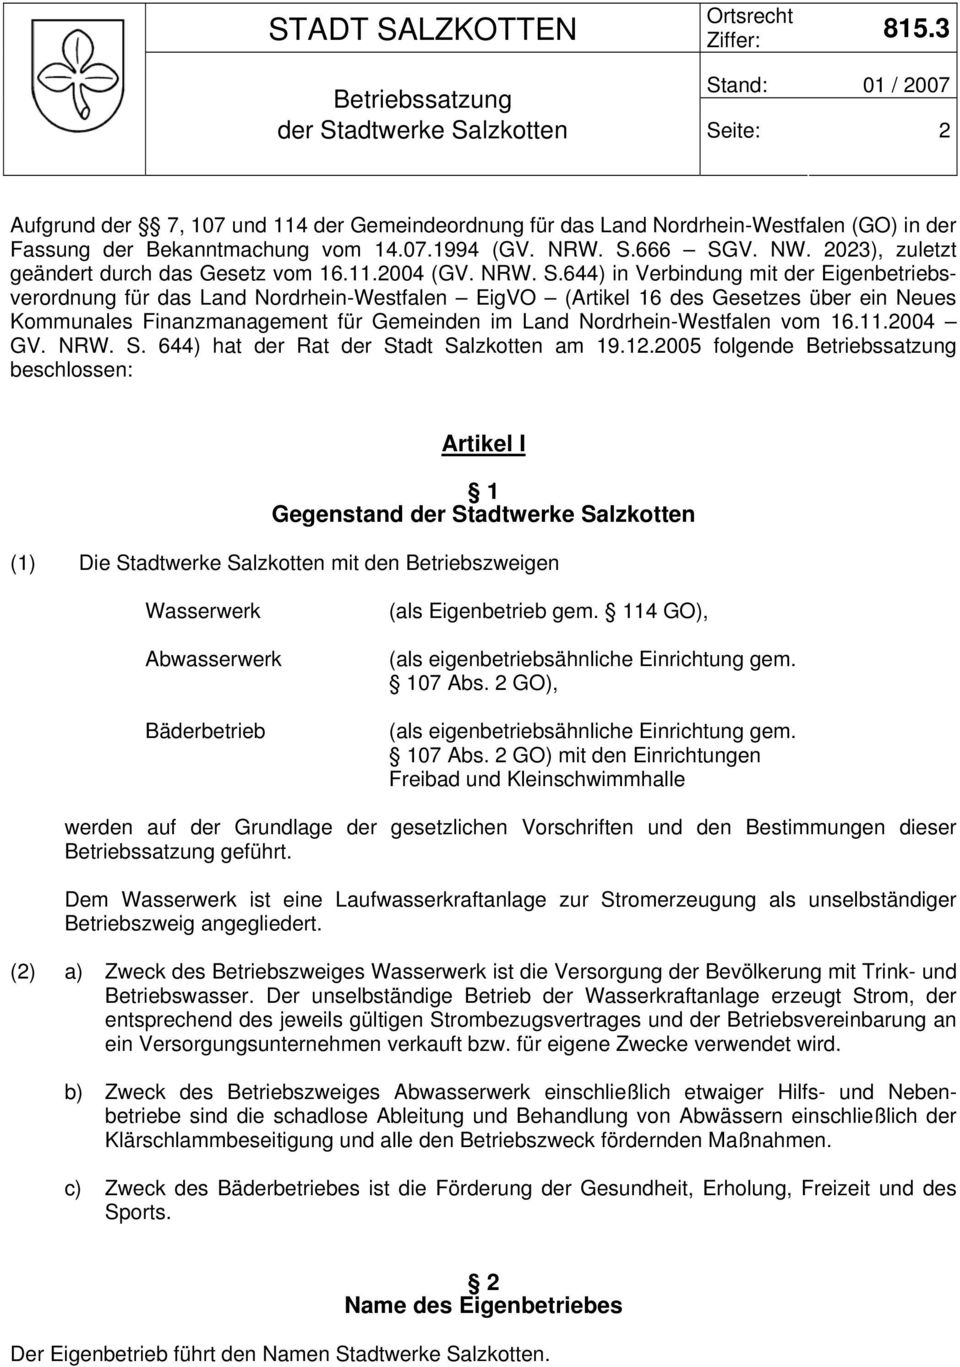 644) in Verbindung mit der Eigenbetriebsverordnung für das Land Nordrhein-Westfalen EigVO (Artikel 16 des Gesetzes über ein Neues Kommunales Finanzmanagement für Gemeinden im Land Nordrhein-Westfalen